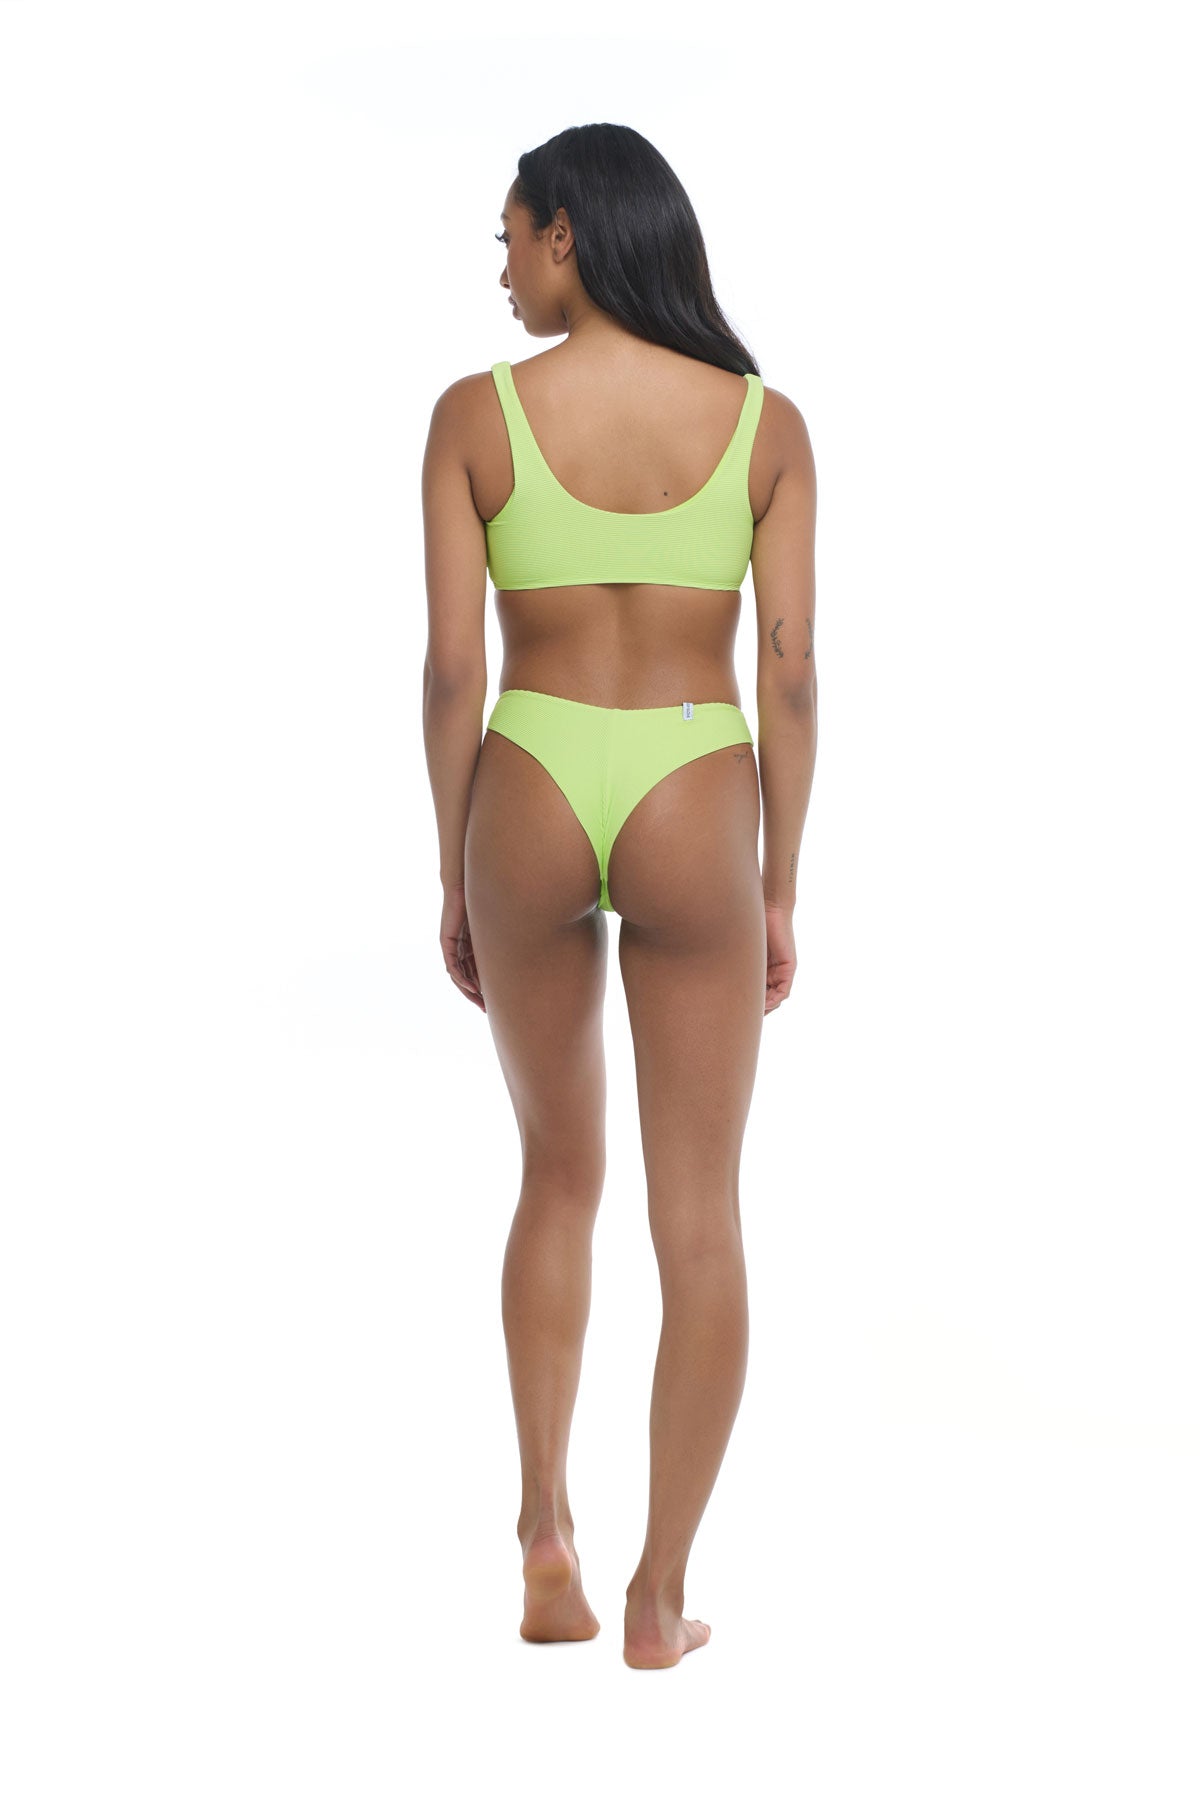 Body Glove: Spectrum Kate Scoop Bikinii Top - CHARTREU